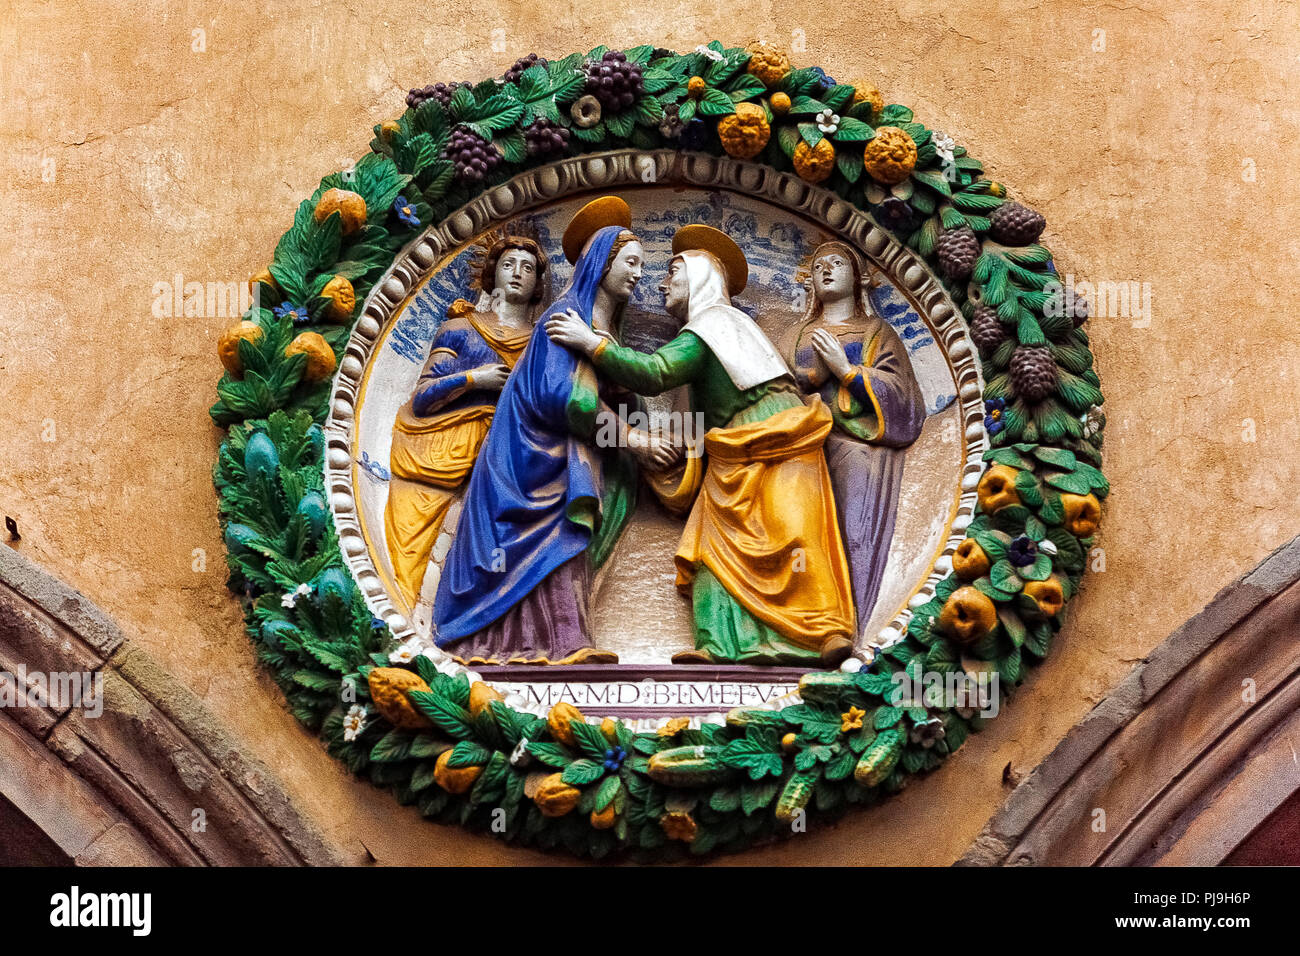 Italy Tuscany Pistoia: Ospedale del Ceppo: Glazed terracotta decorations by Della Robbia Stock Photo